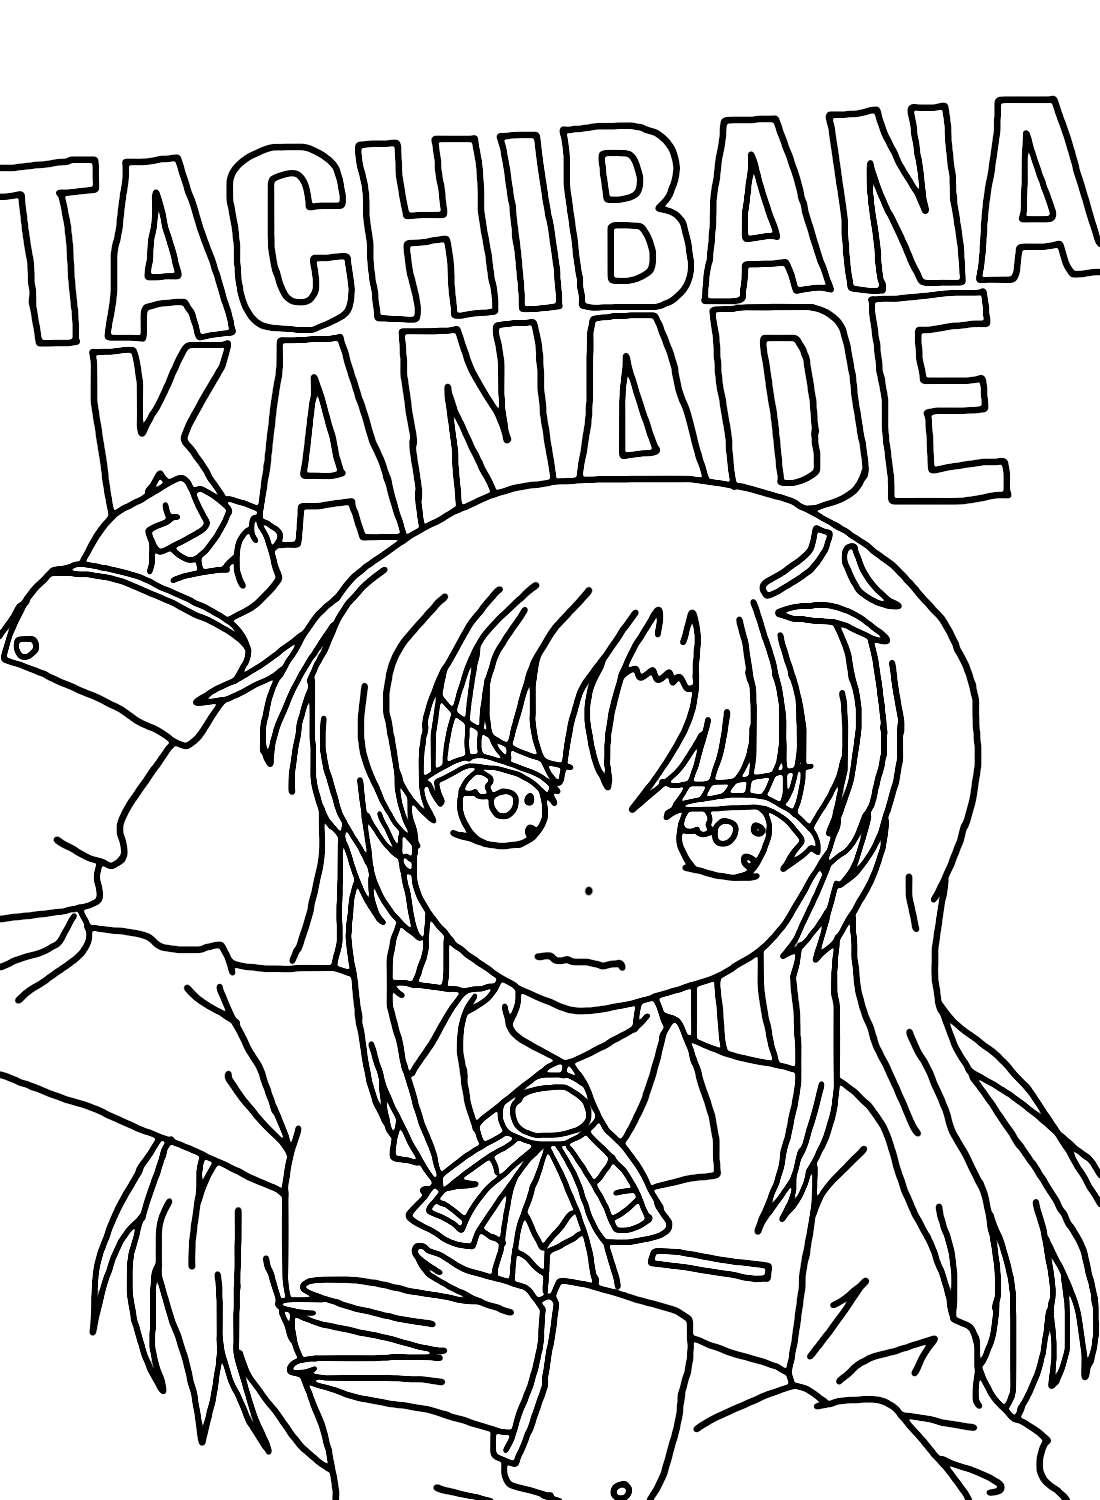 橘奏 (Tachibana Kanade) 着色页 橘奏 (Kanade Tachibana)